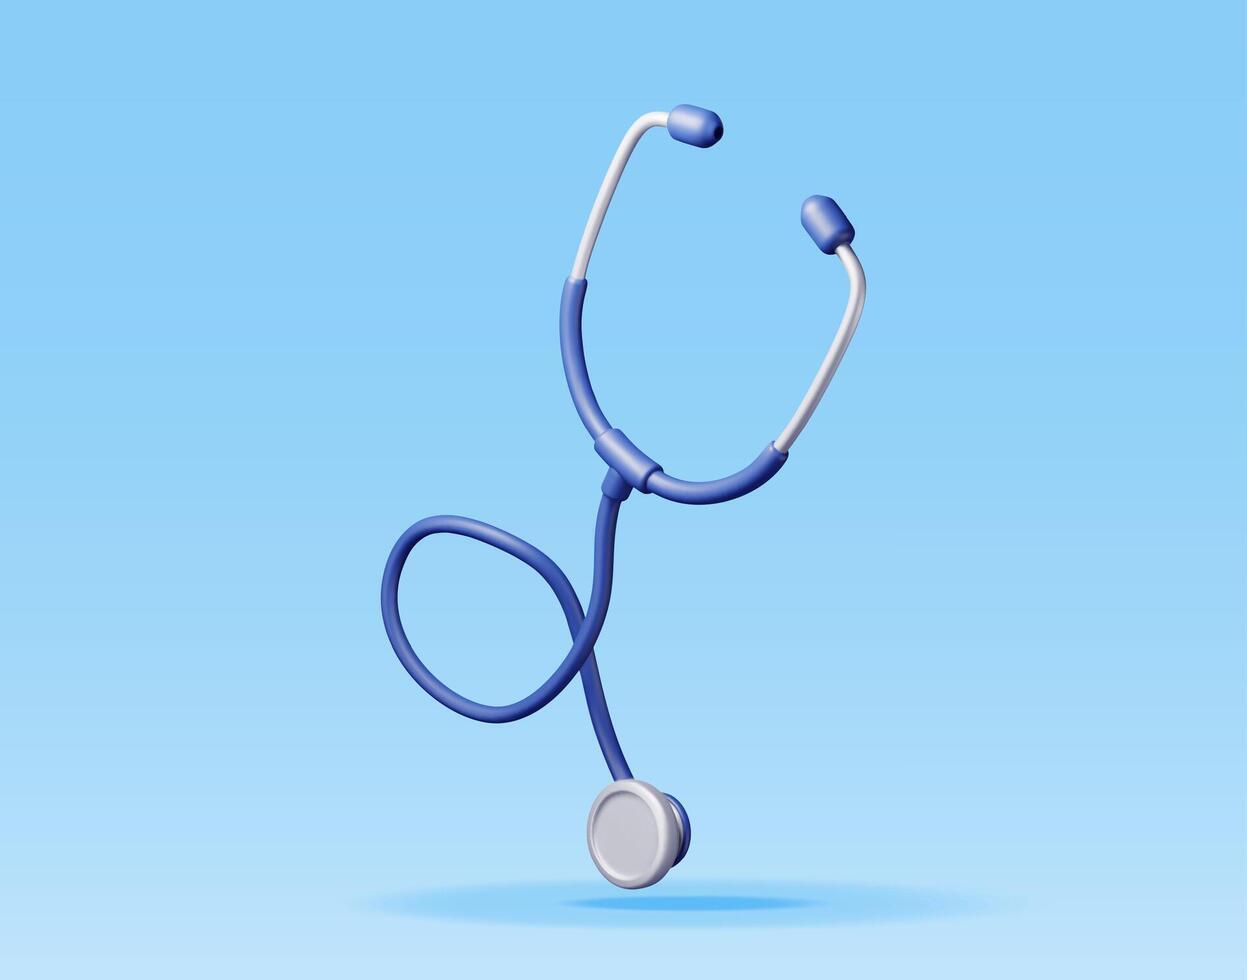 3d medizinisch Stethoskop isoliert auf Blau. machen Stethoskop Arzt Instrument Symbol. Medizin und Gesundheitspflege, Kardiologie, Apotheke, Drogerie, medizinisch Bildung. vektor